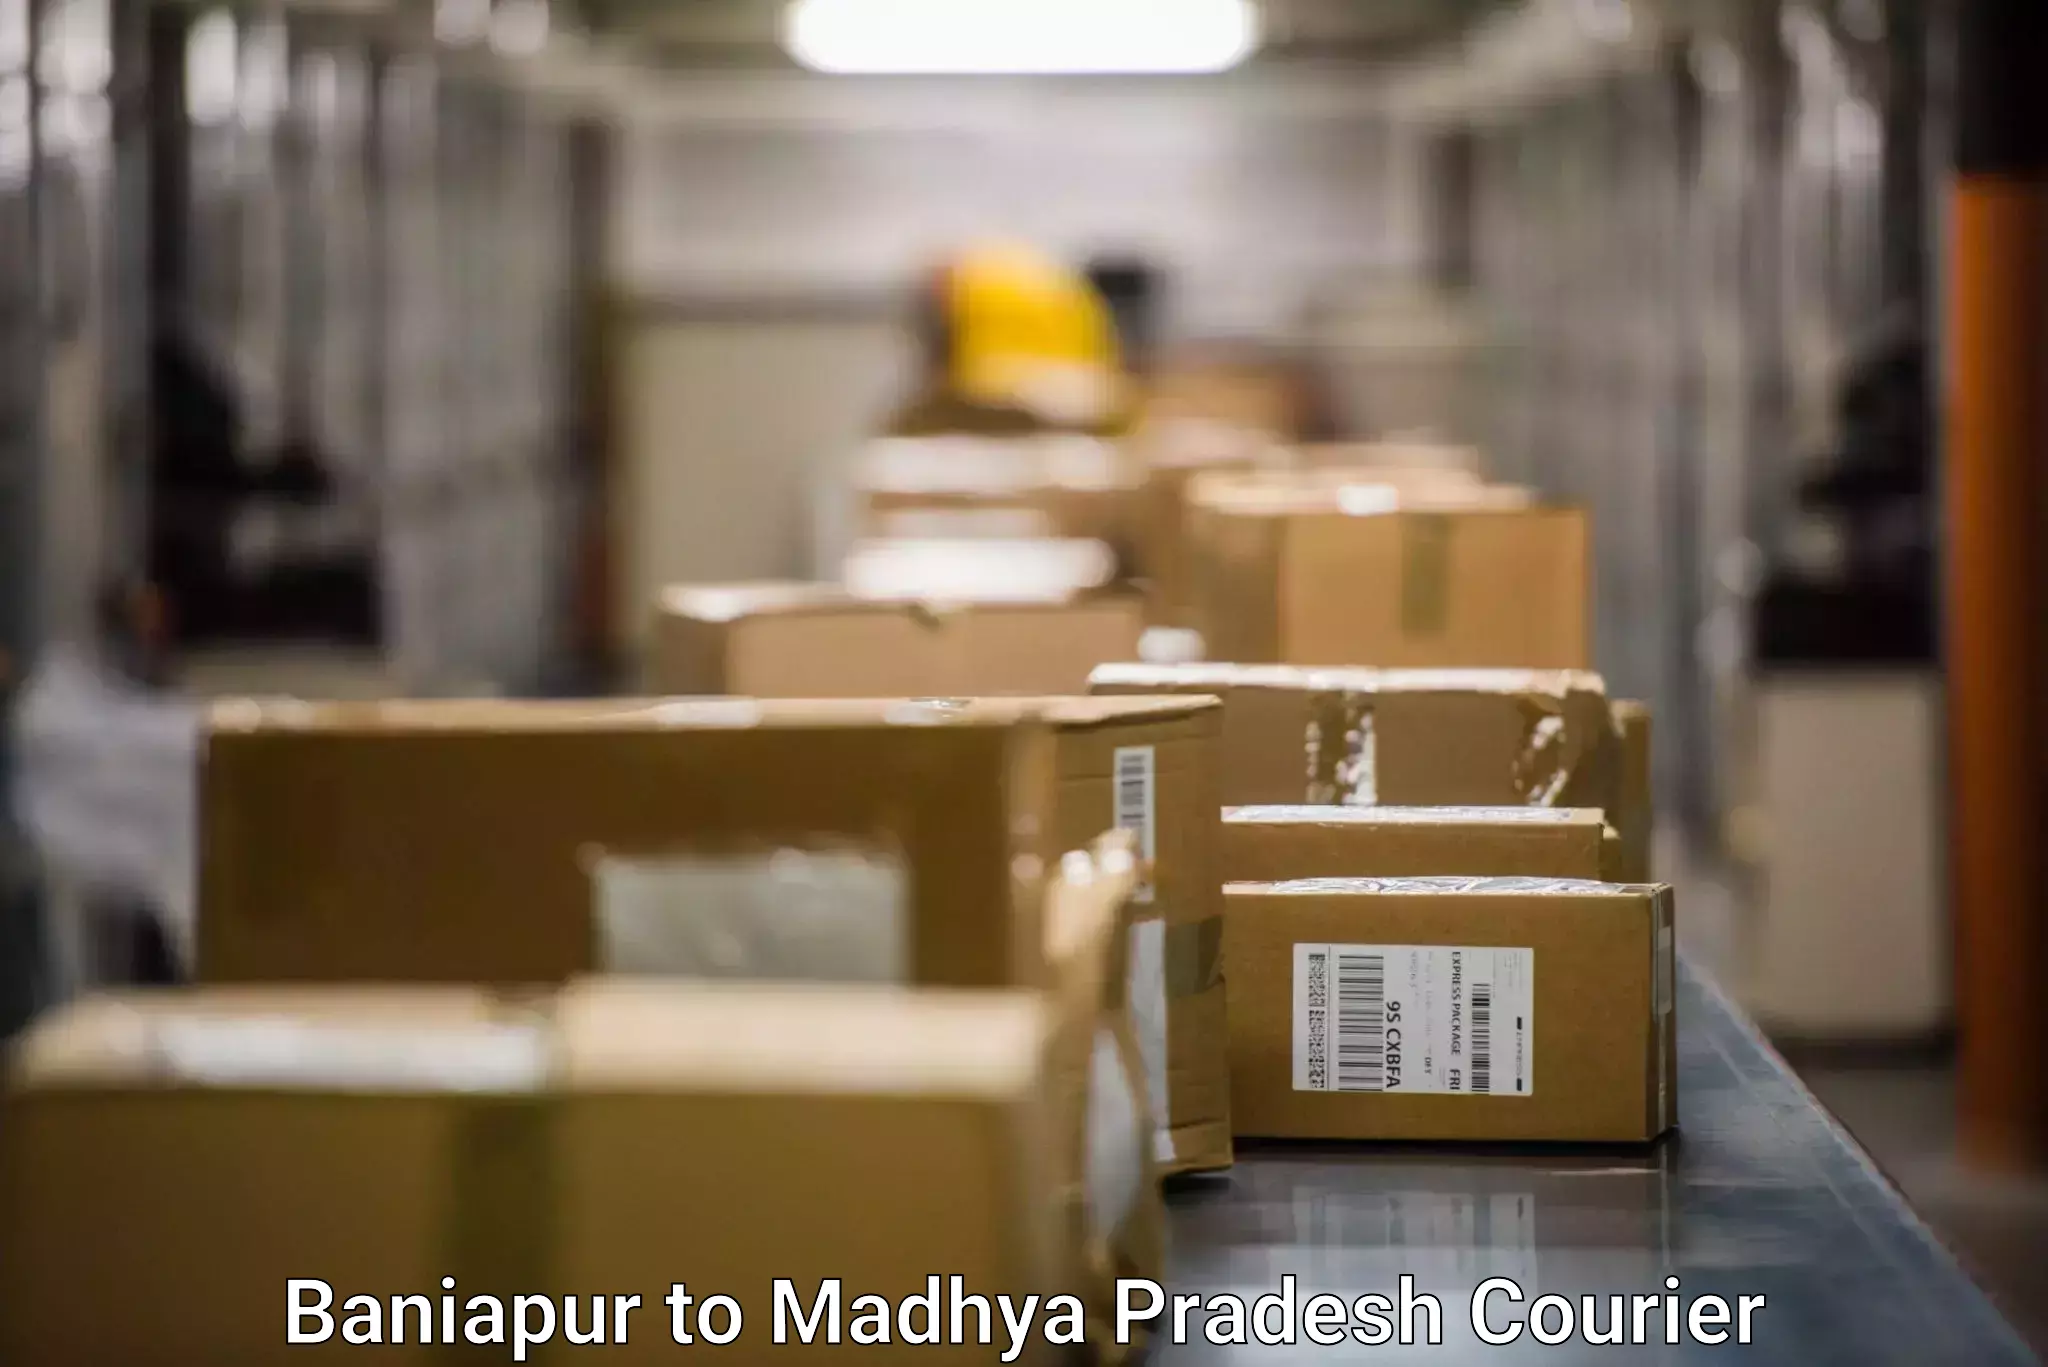 Ocean freight courier Baniapur to Madhya Pradesh